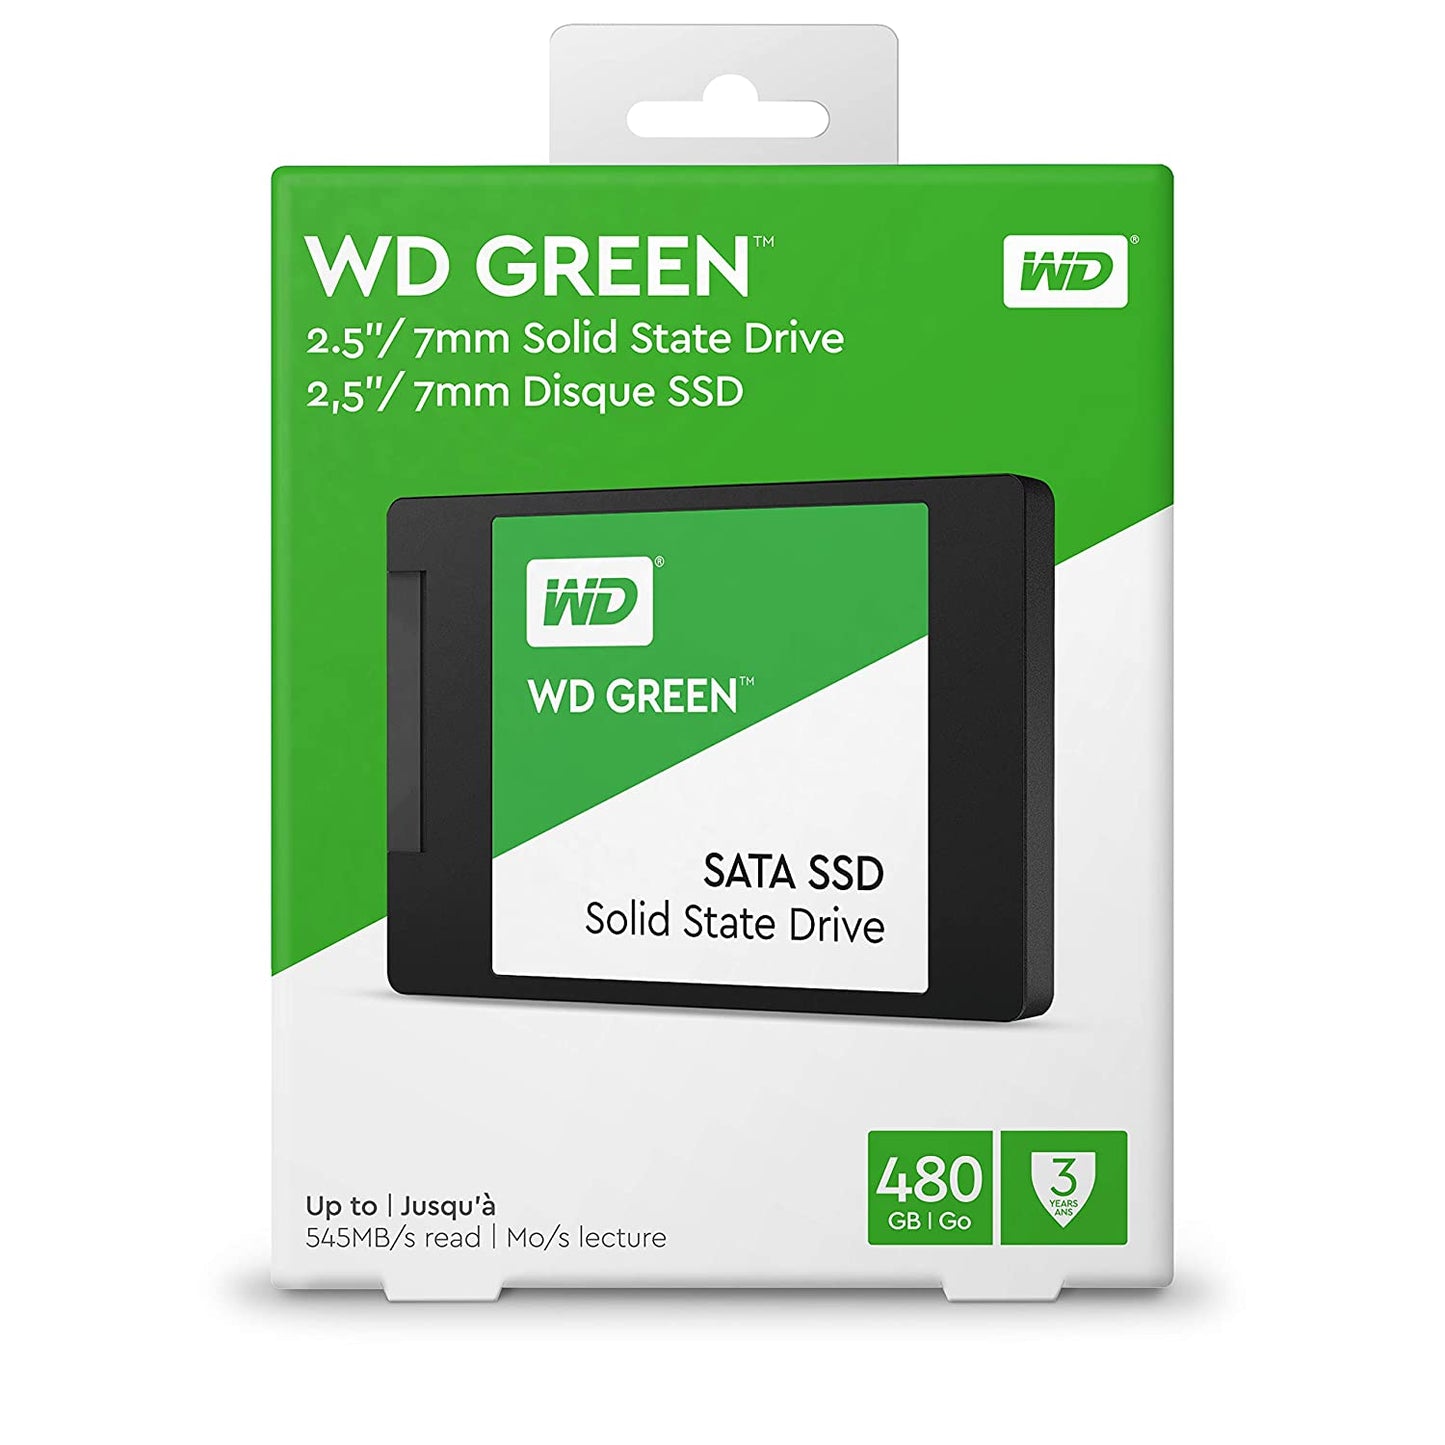 SSD-480-GB-WD-SATA-84717090